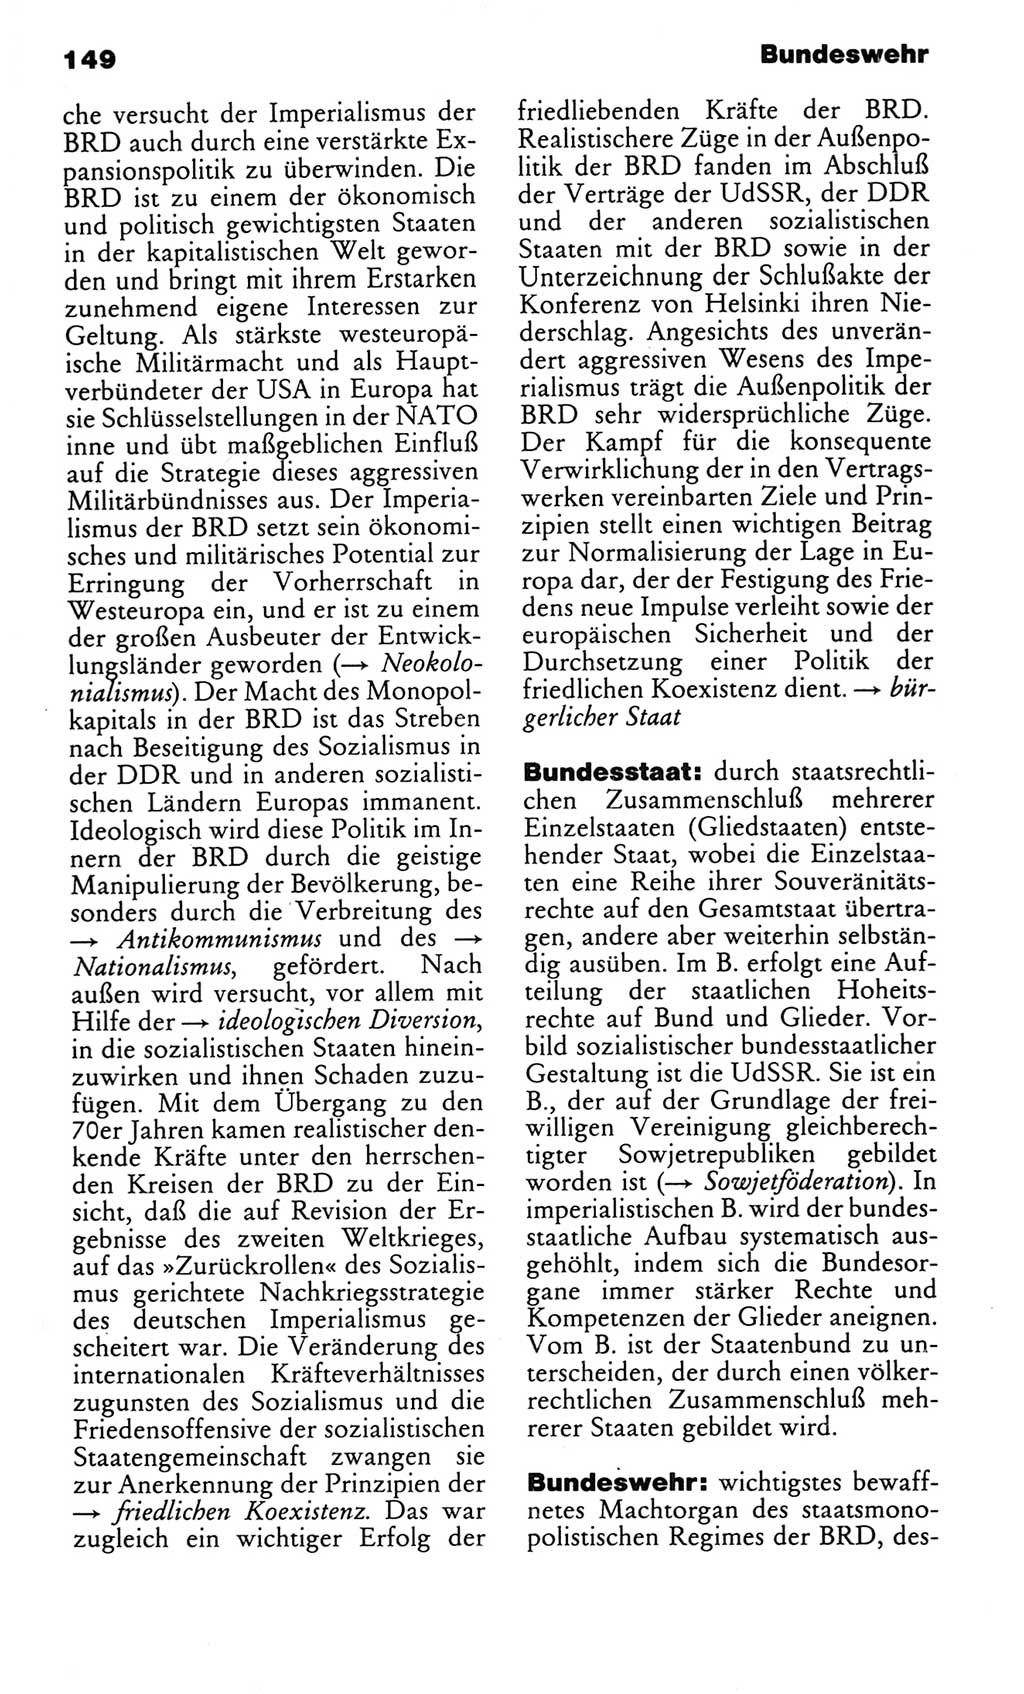 Kleines politisches Wörterbuch [Deutsche Demokratische Republik (DDR)] 1985, Seite 149 (Kl. pol. Wb. DDR 1985, S. 149)